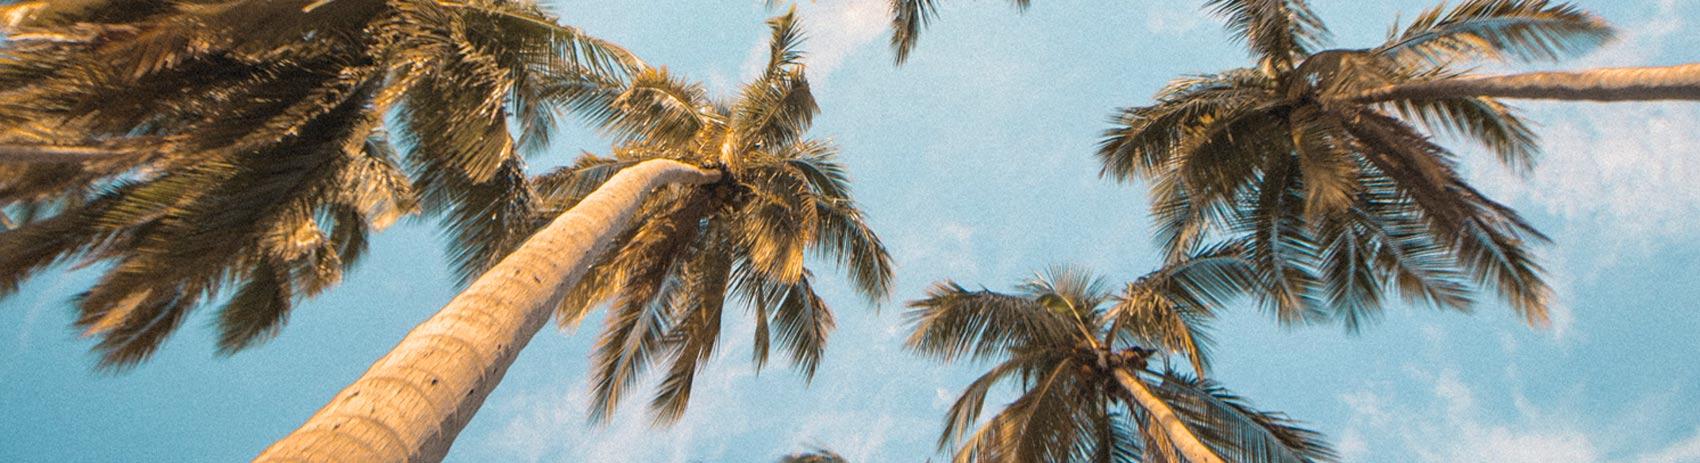 image palmier et plage